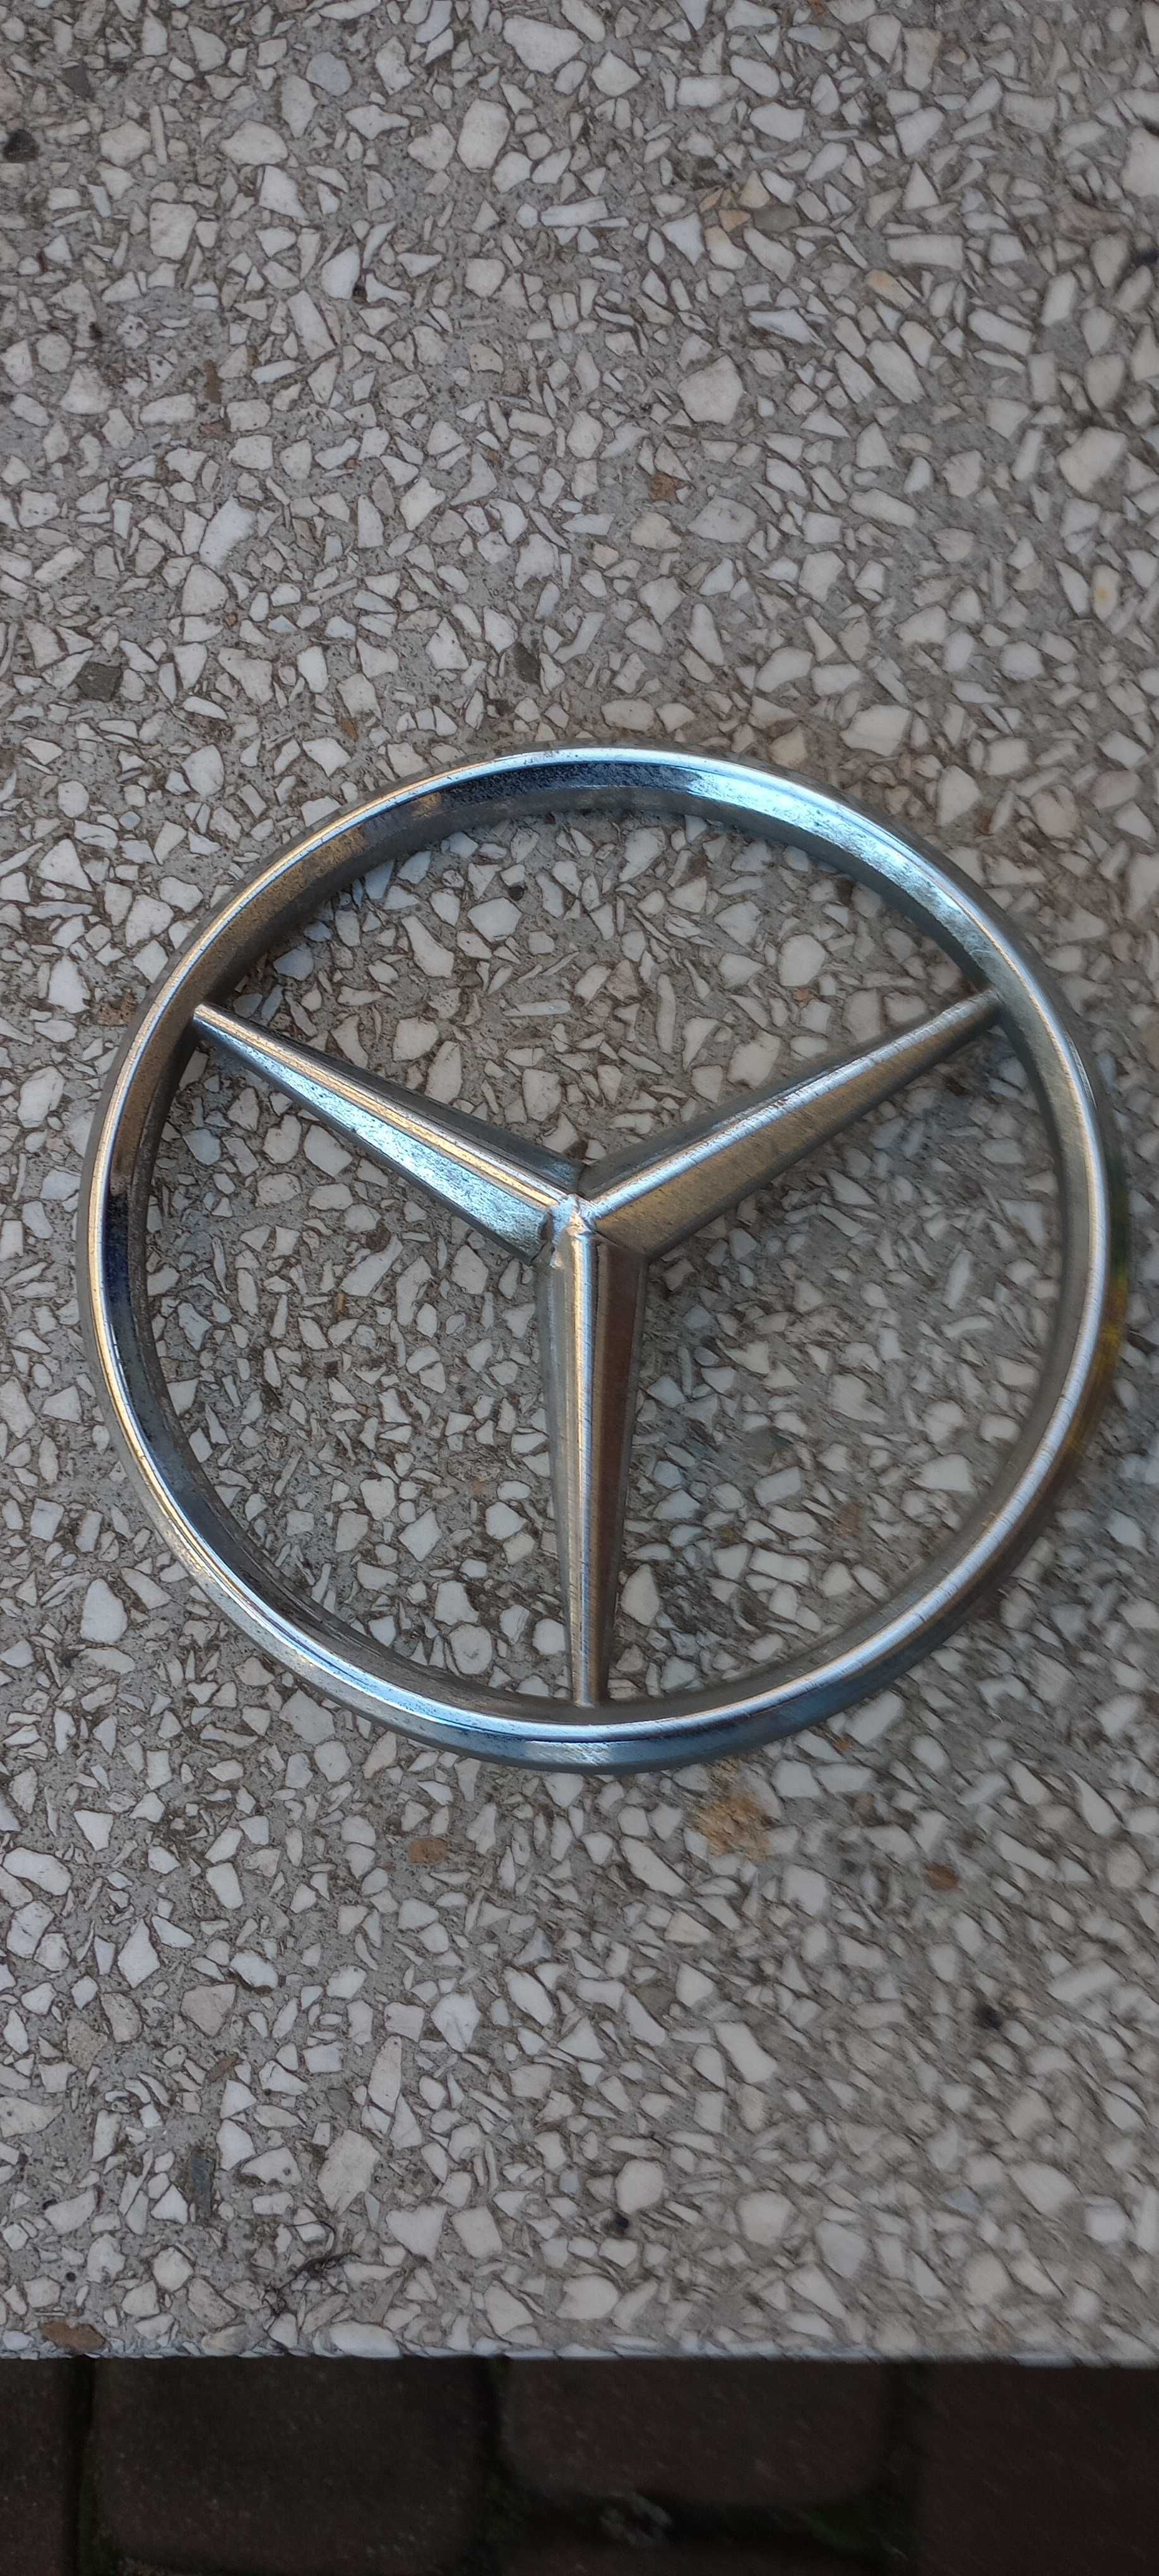 Emblemat Mercedes